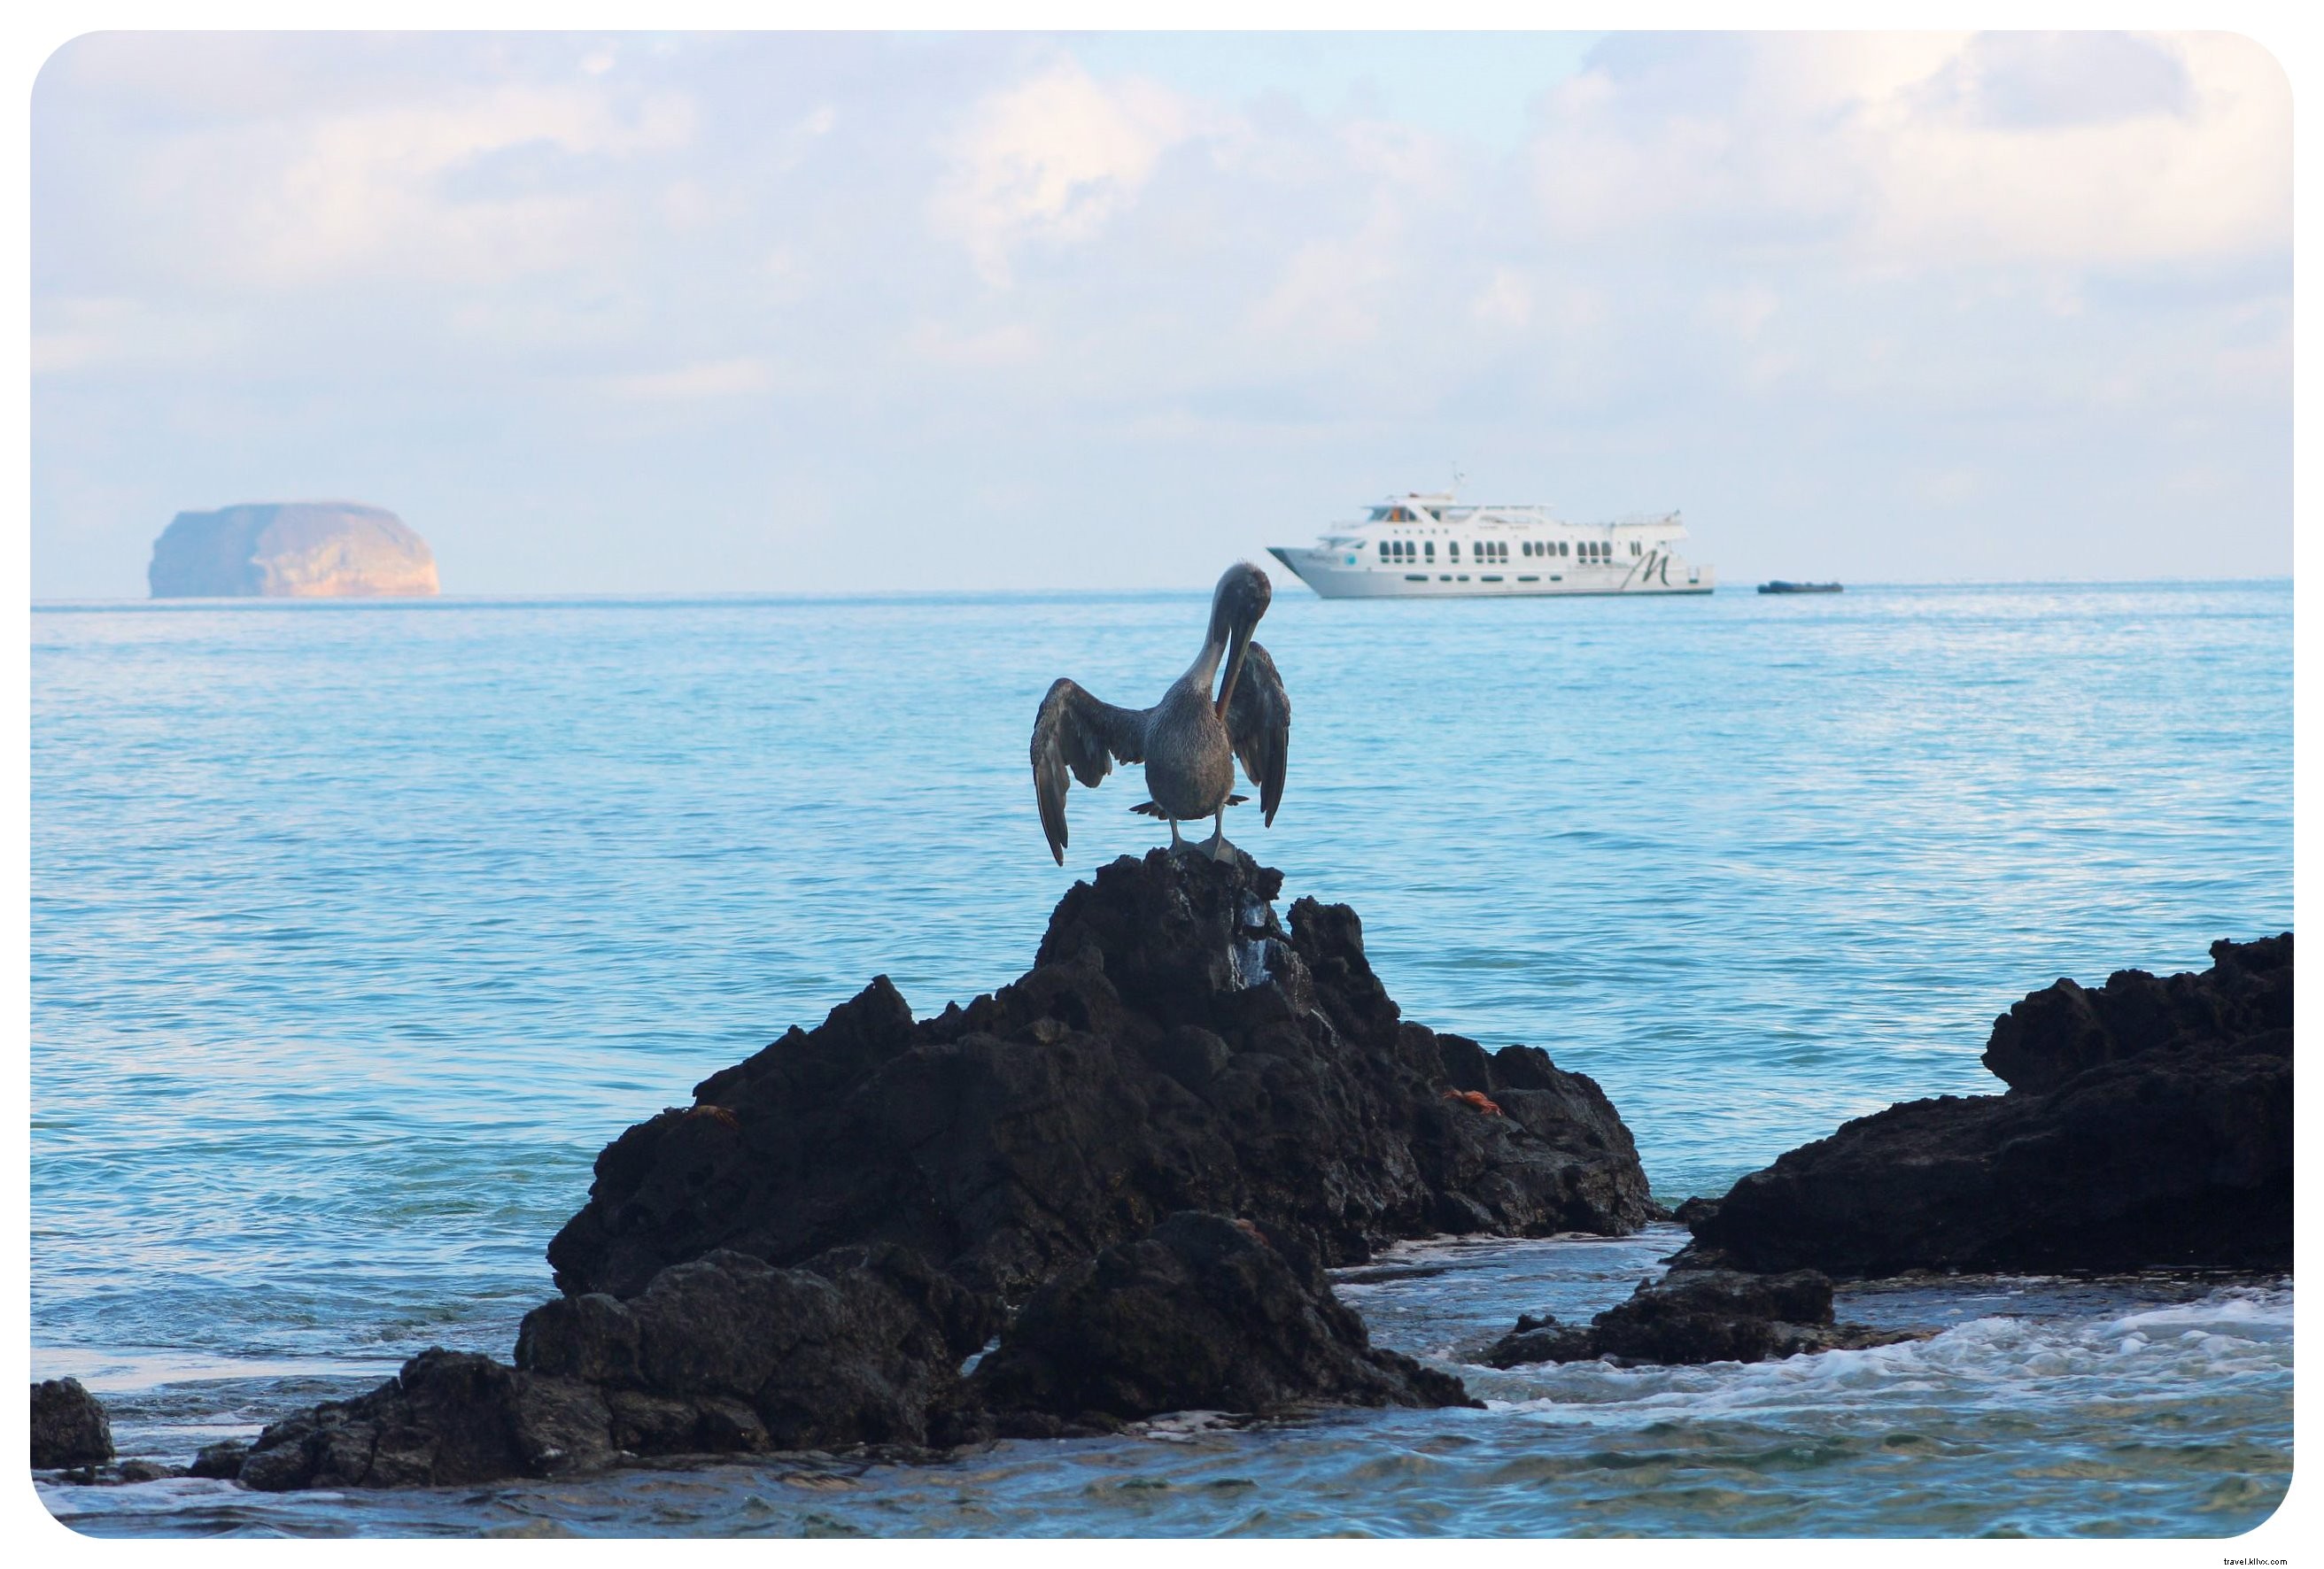 ガラパゴス諸島：行く前に知っておくべき15のこと